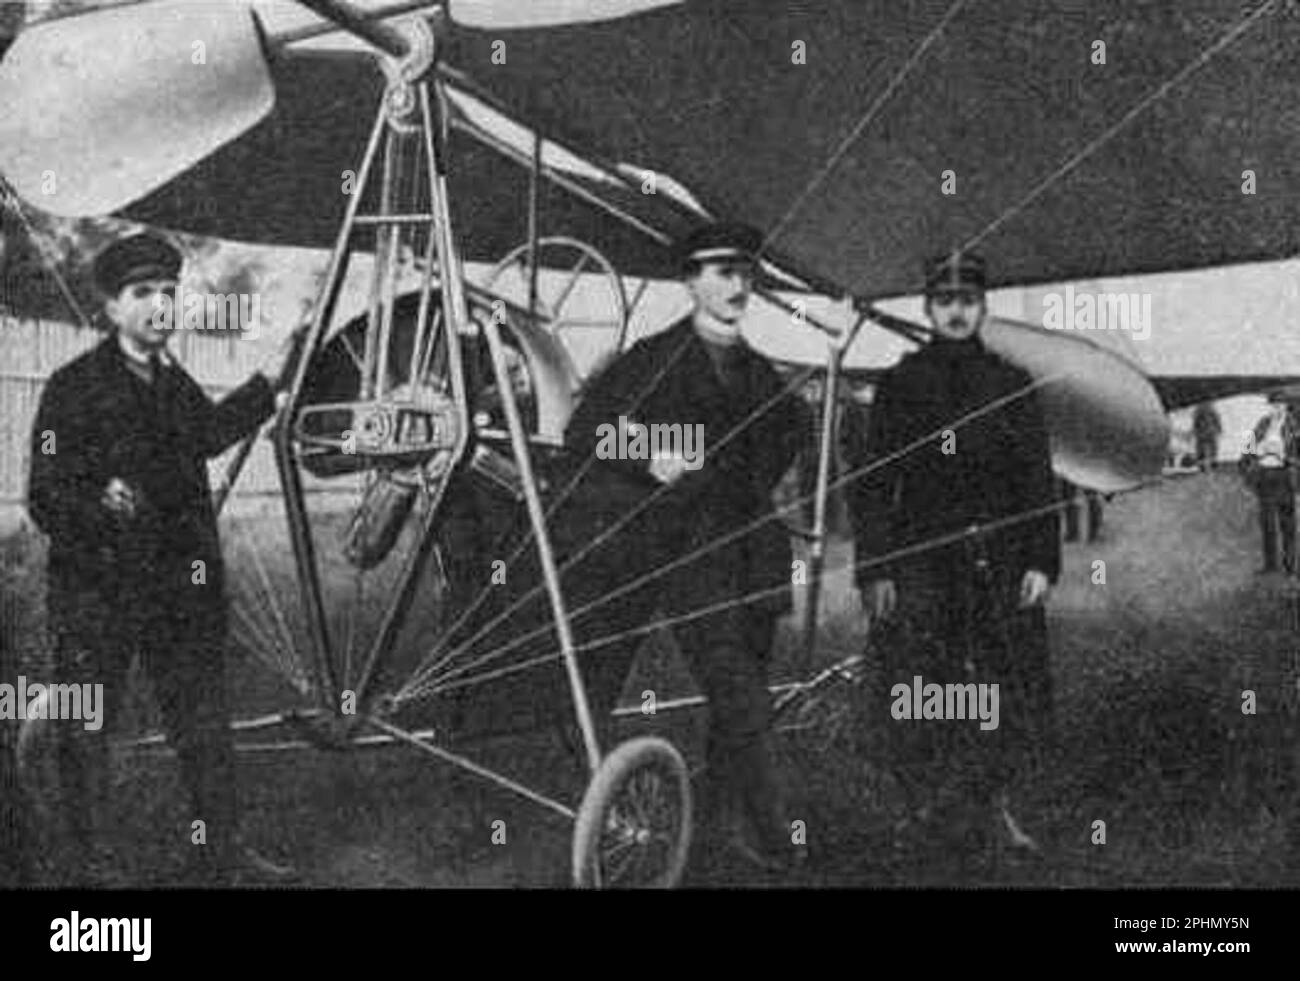 A. Vlaicu Nr Je avion à octobre 1910 exercices militaires Banque D'Images